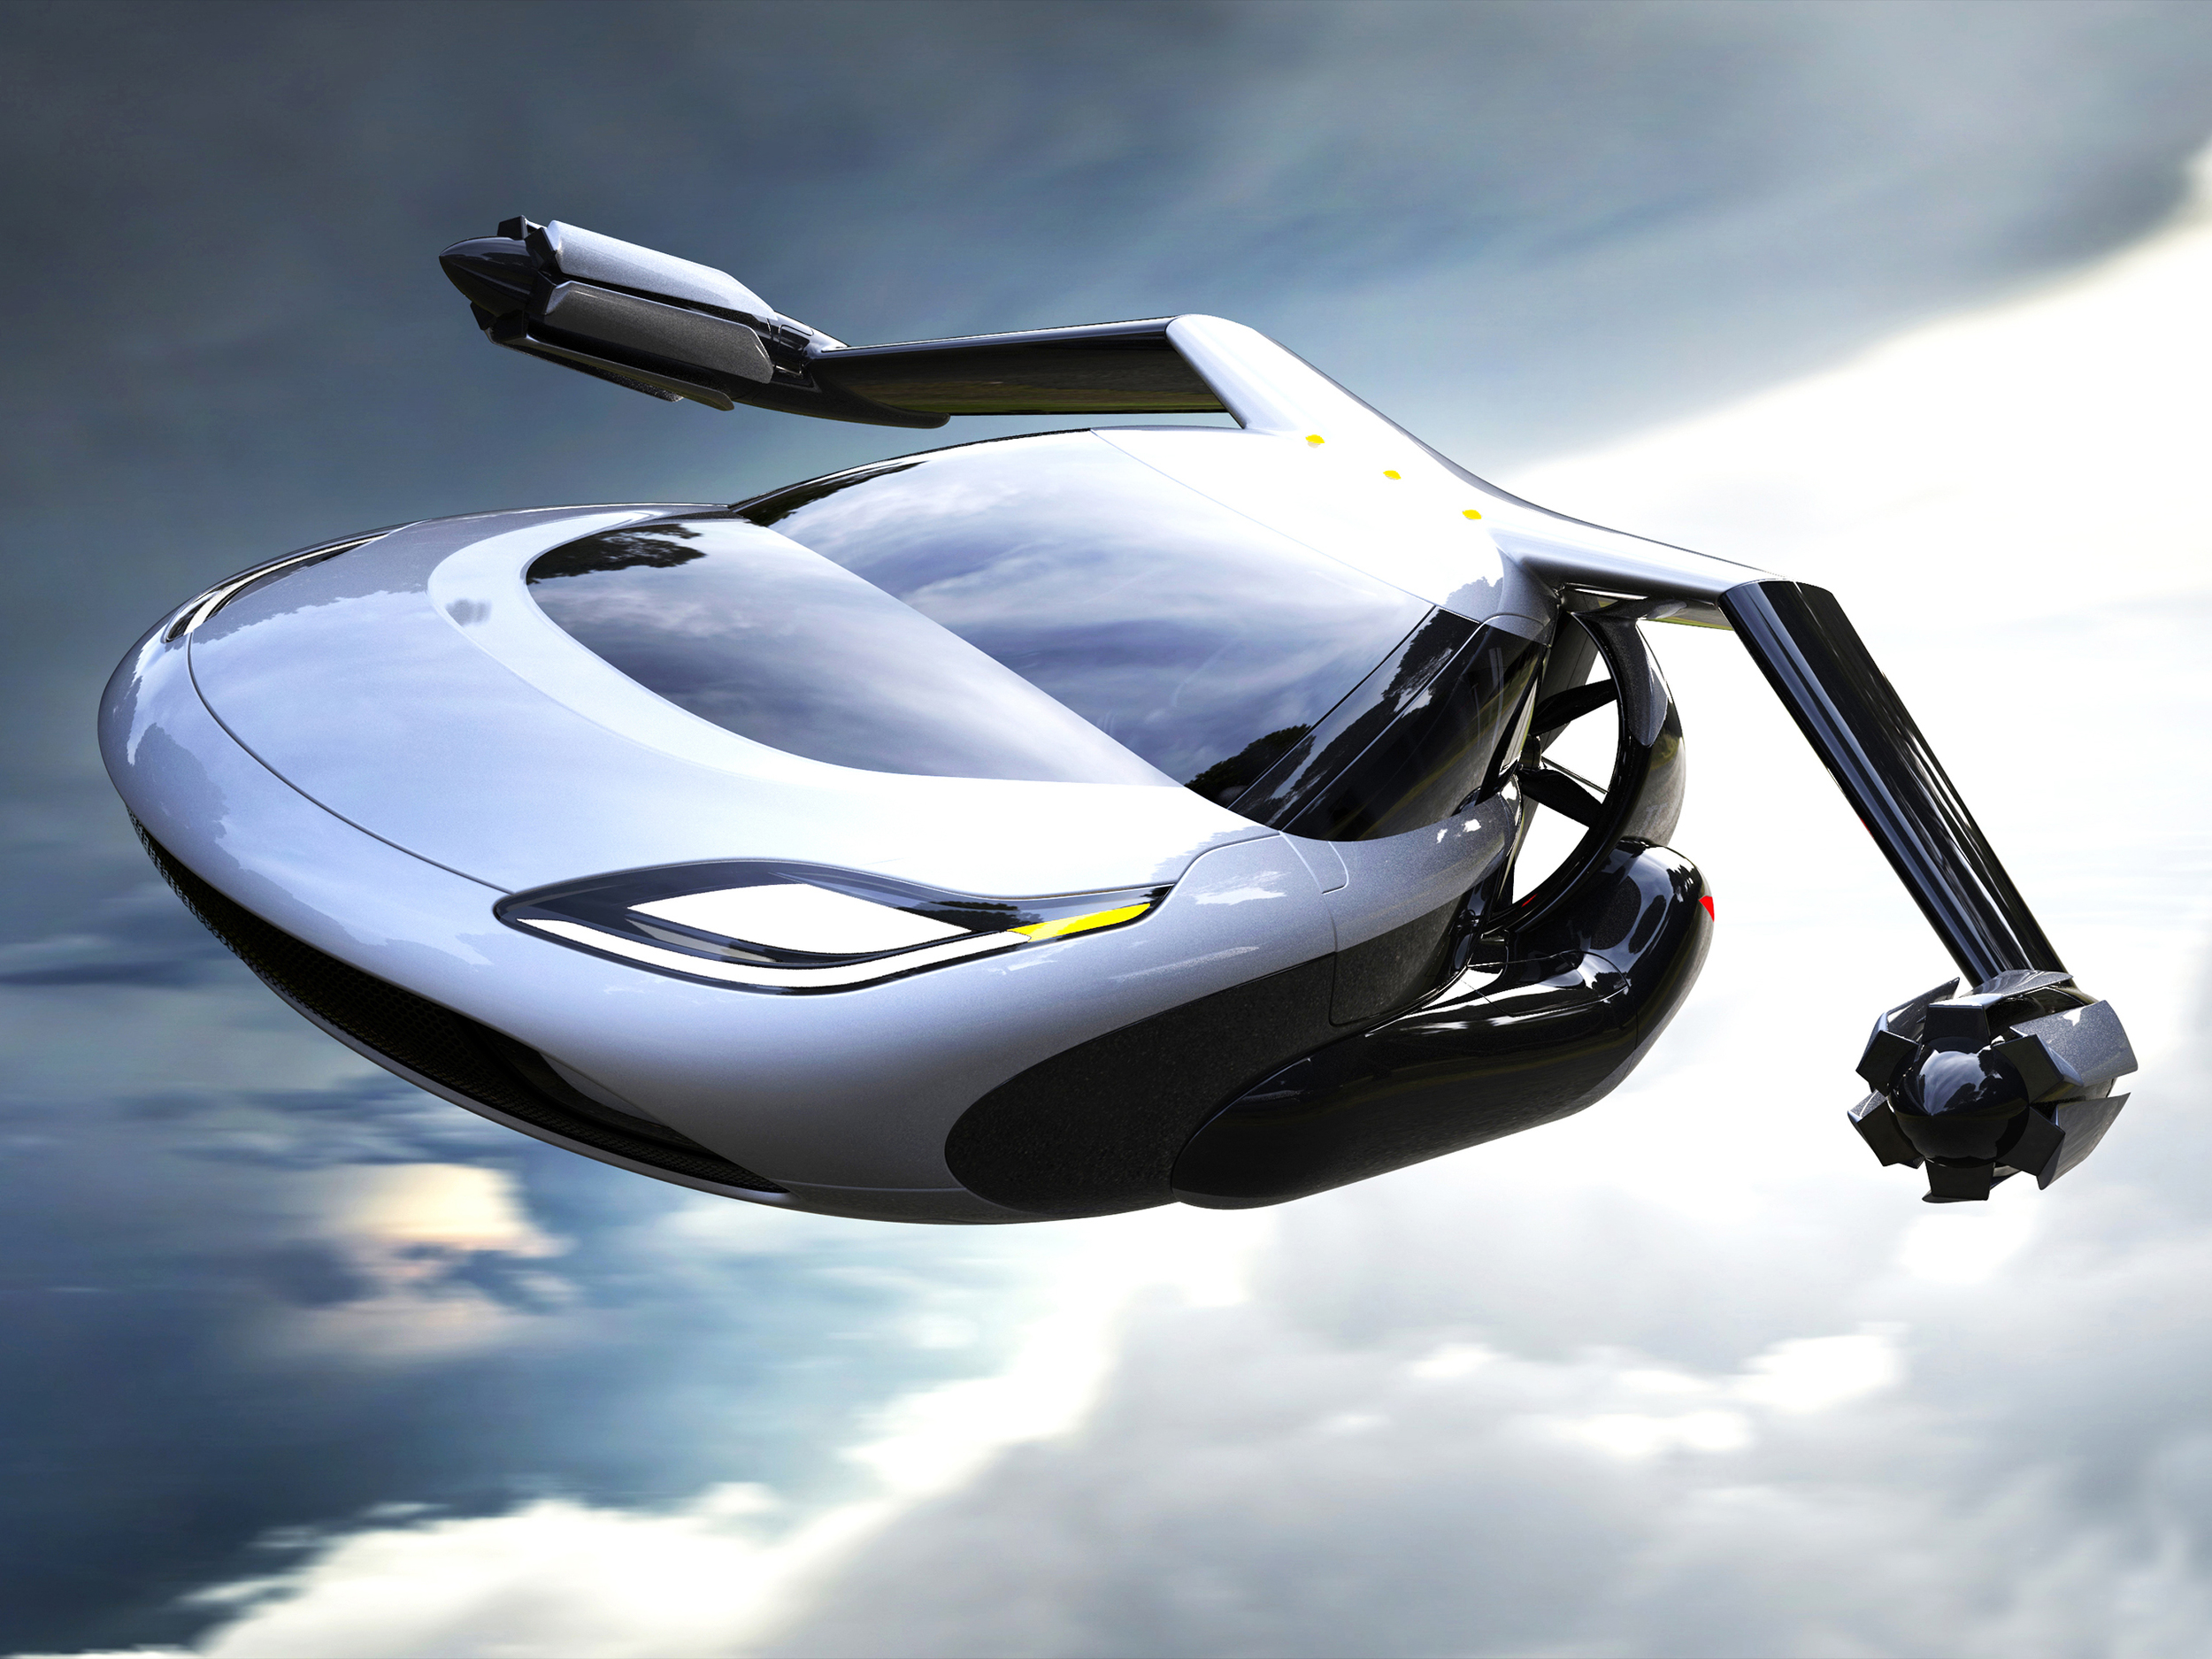 Terrafugia reveals new flying car